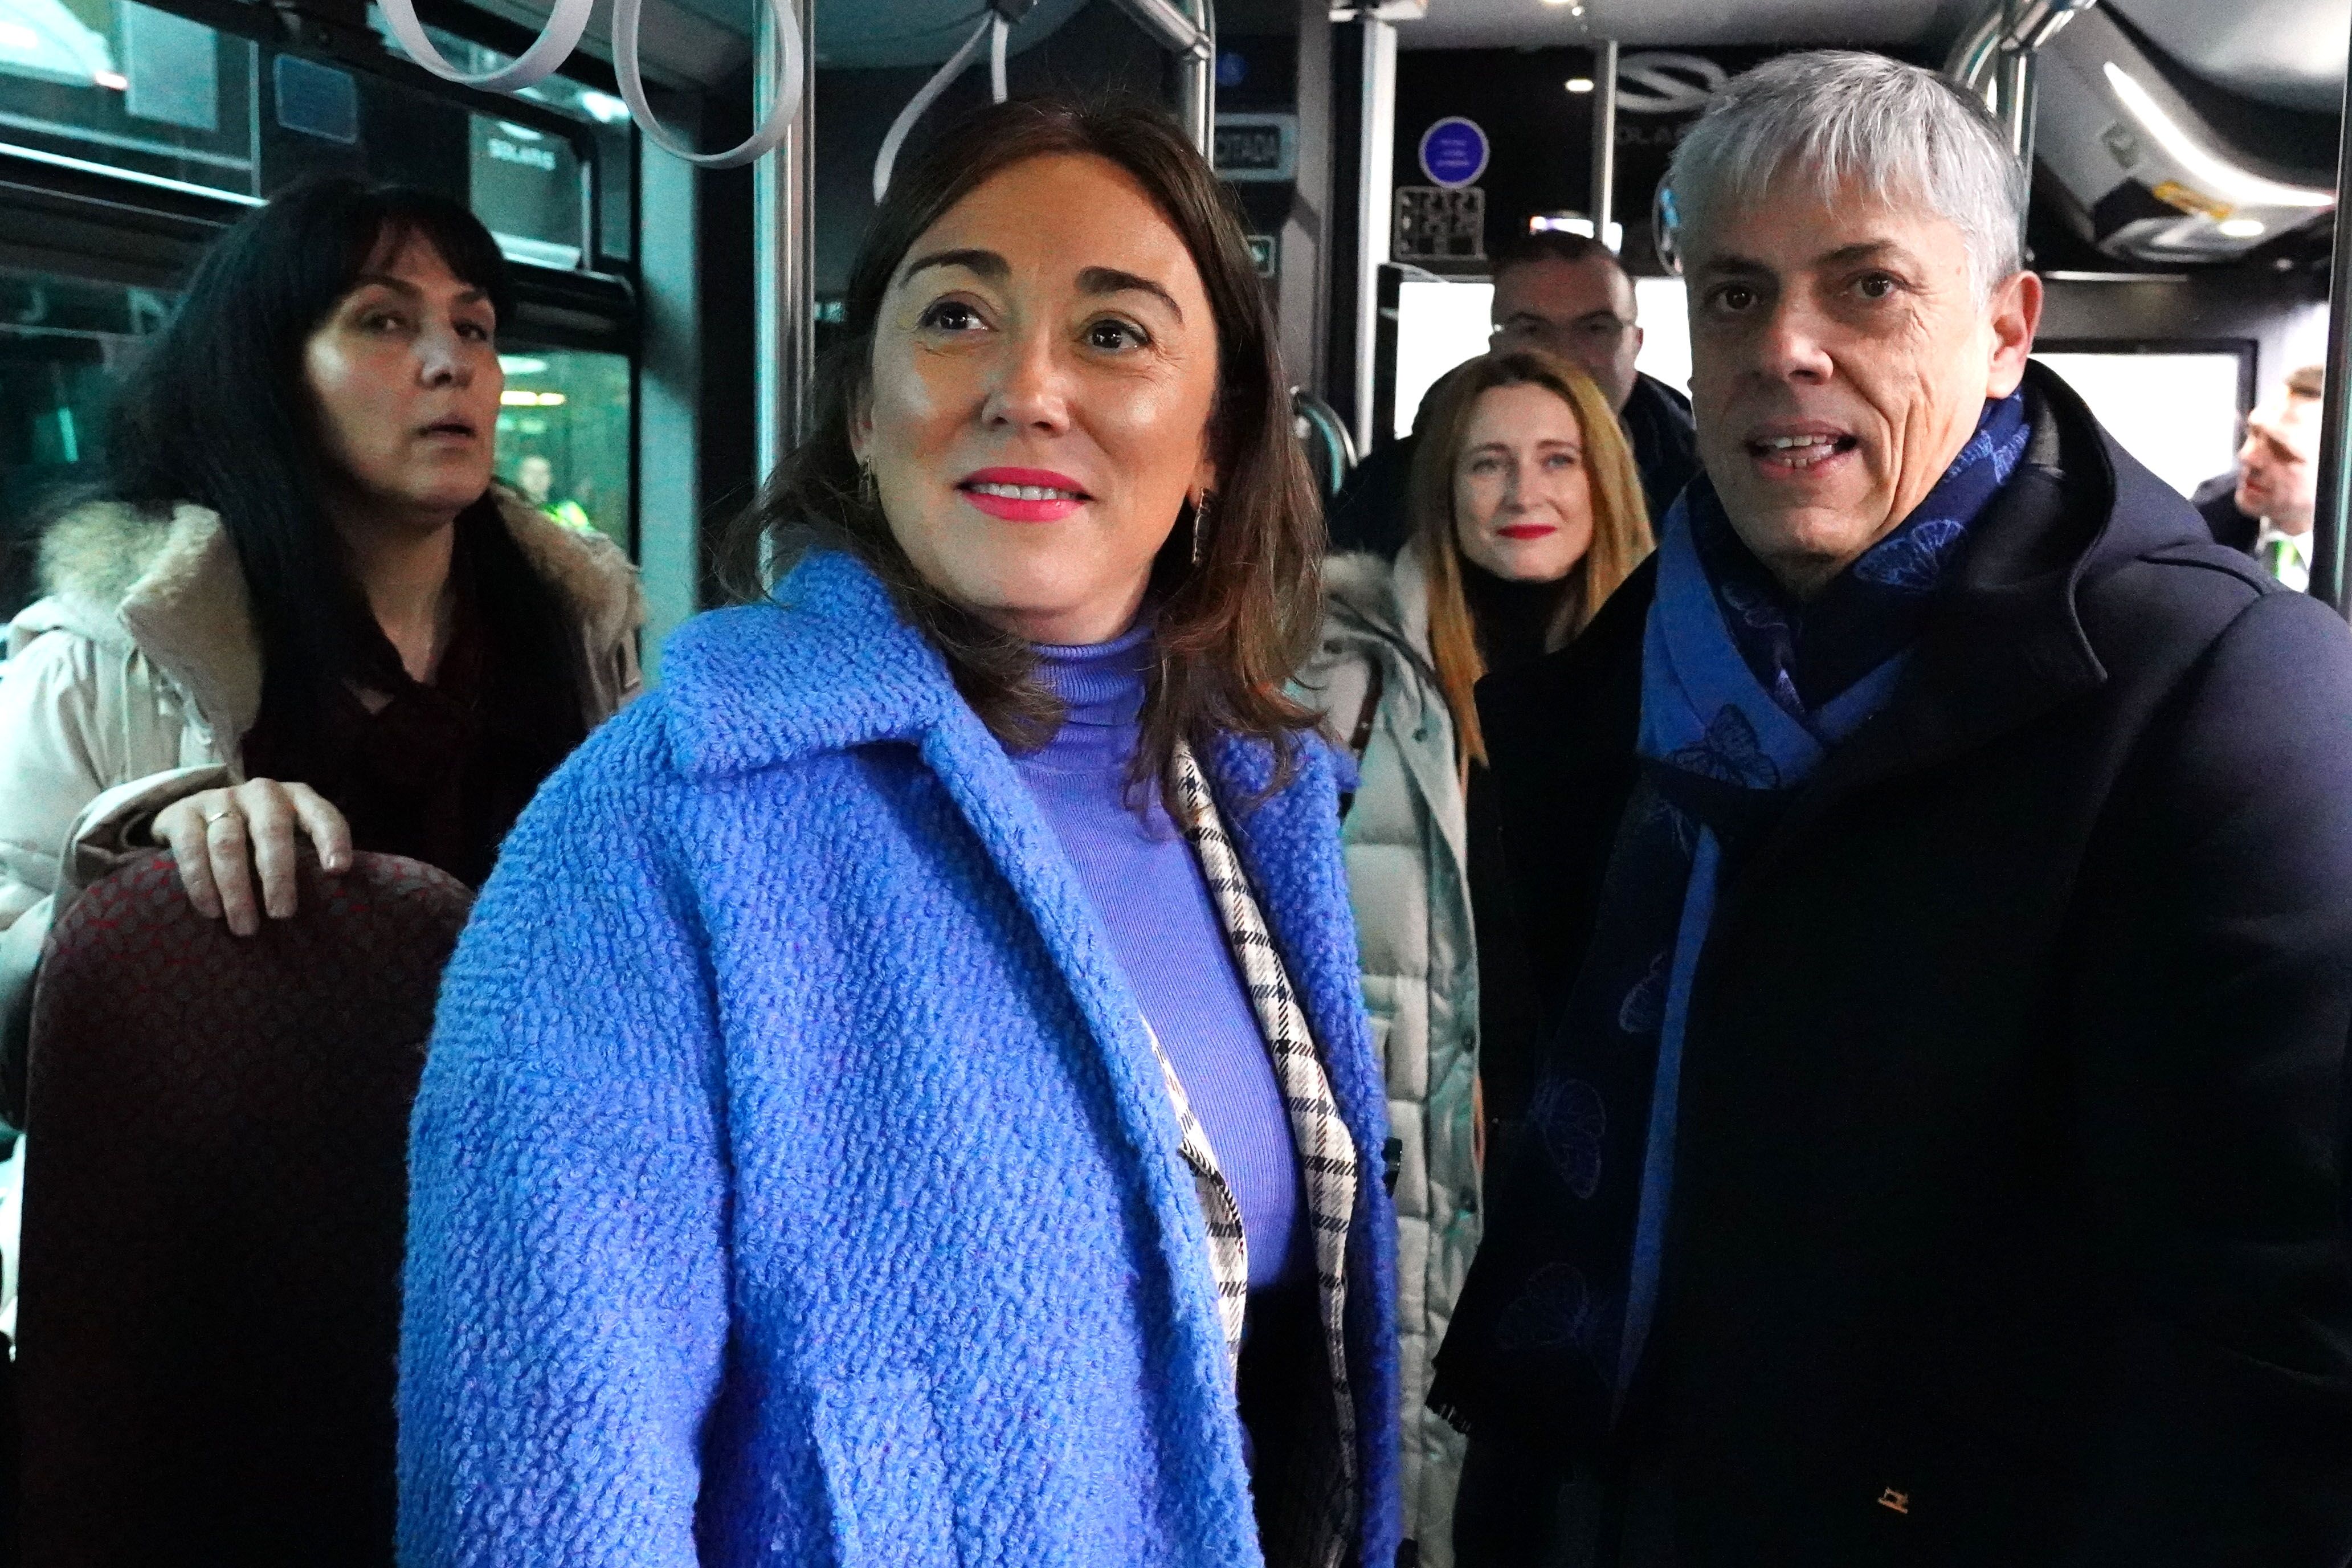  La consejera de Movilidad, María González, este lunes en la estación de autobuses en León. | CAMPILLO (ICAL)